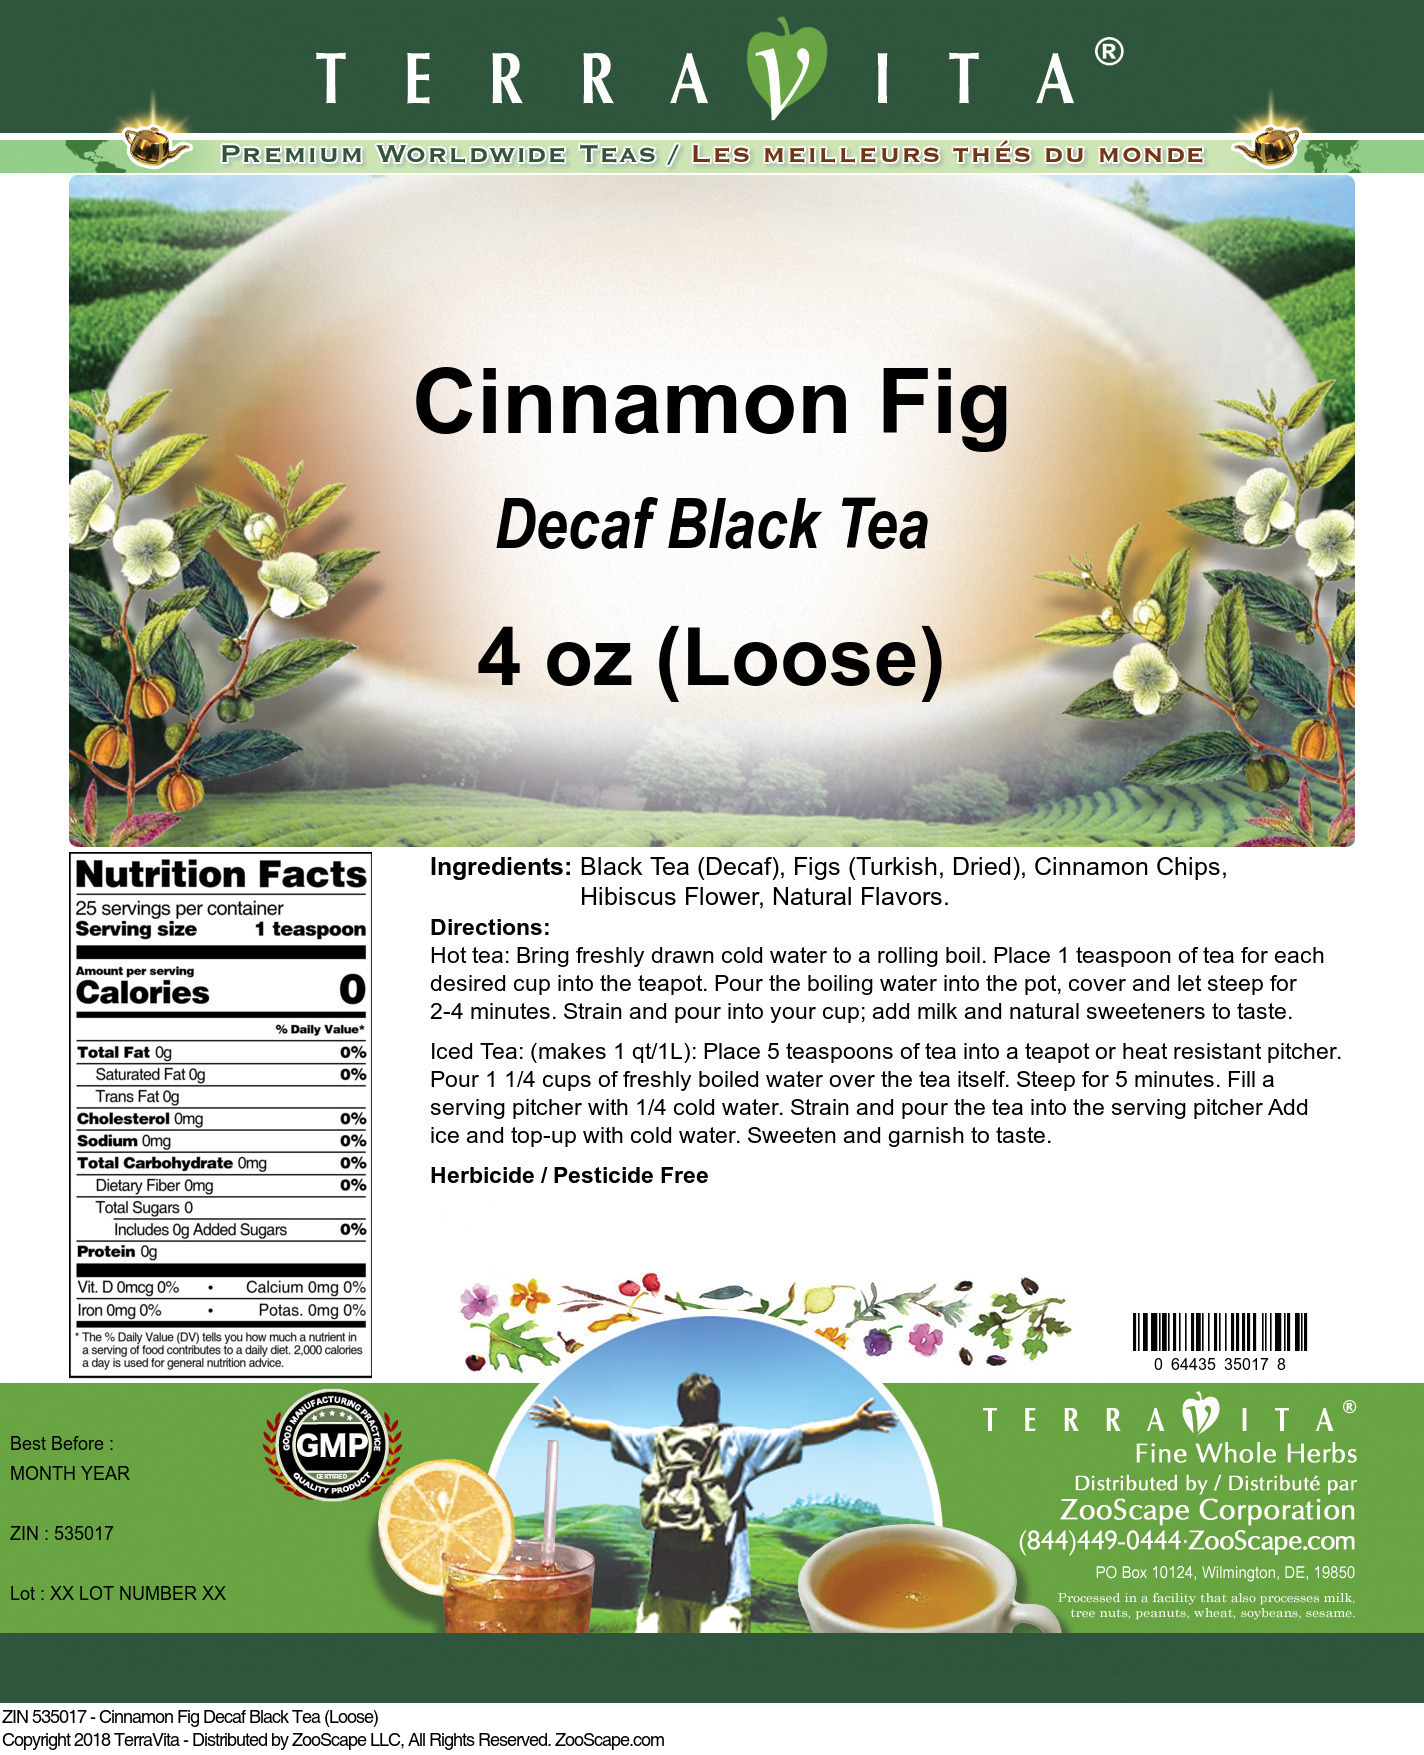 Cinnamon Fig Decaf Black Tea (Loose) - Label